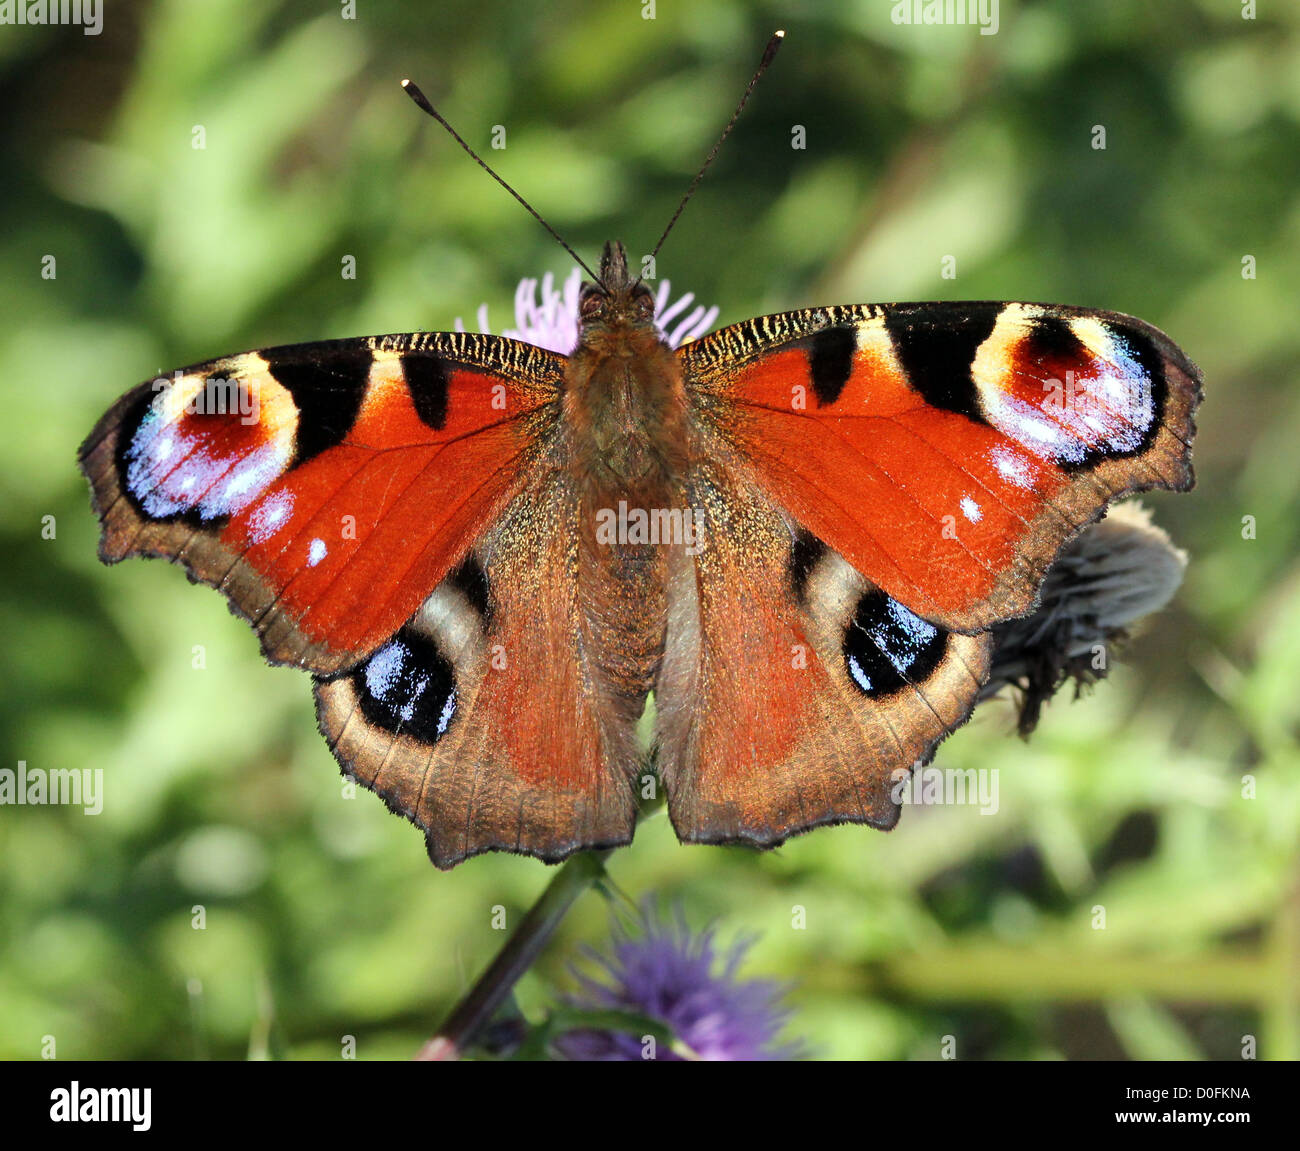 Unión común mariposa pavo real (Inachis io, io Aglais) forrajeando en un cardo Foto de stock